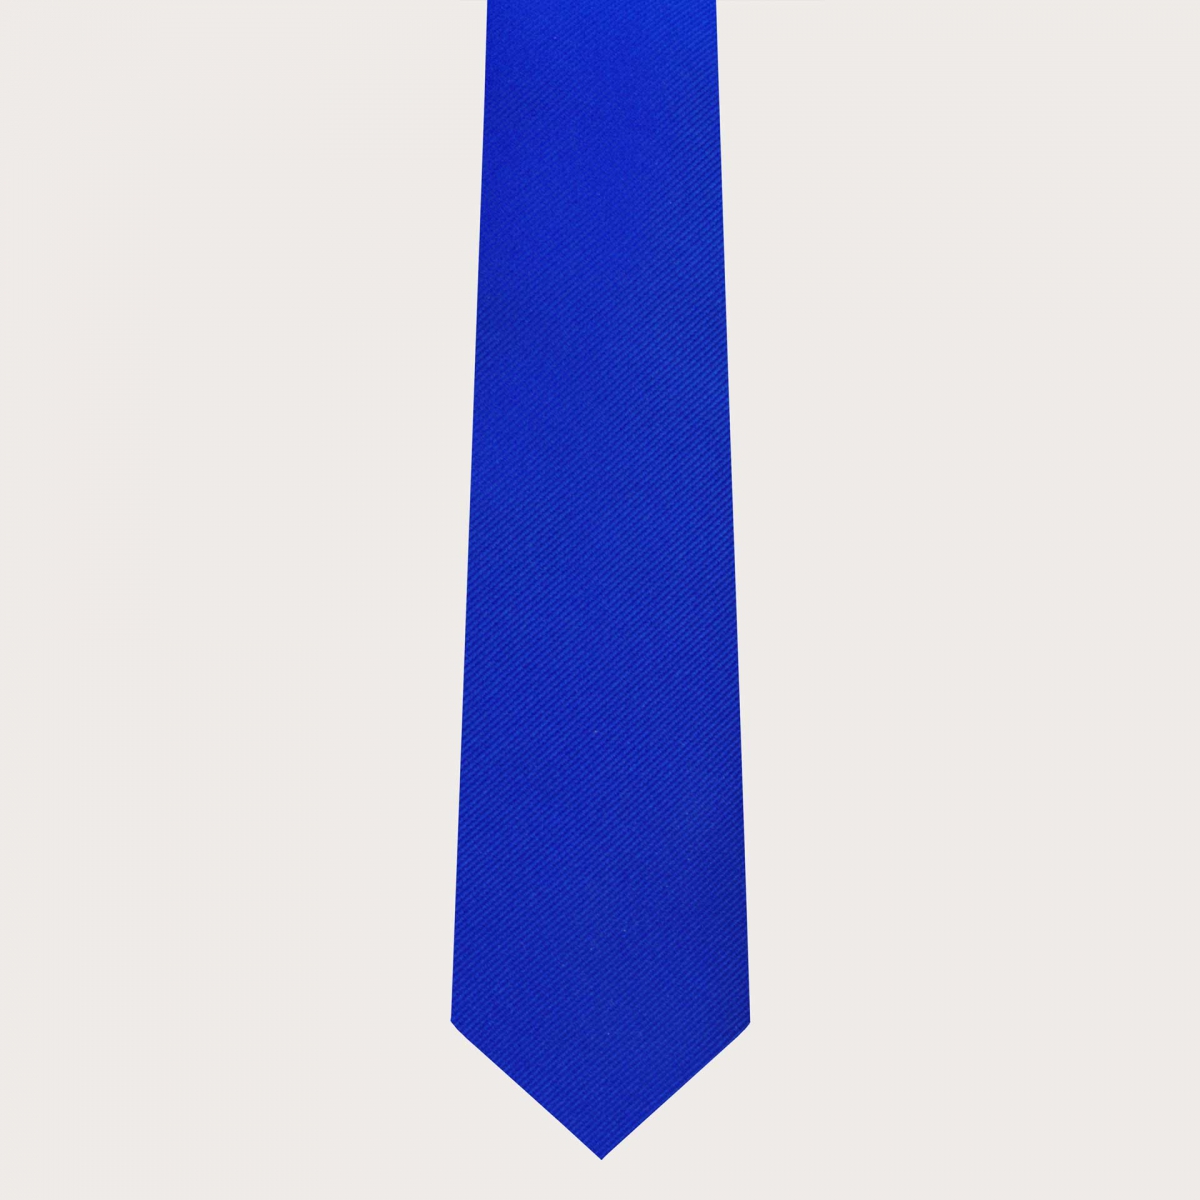 BRUCLE Cravate bleu royale en soie